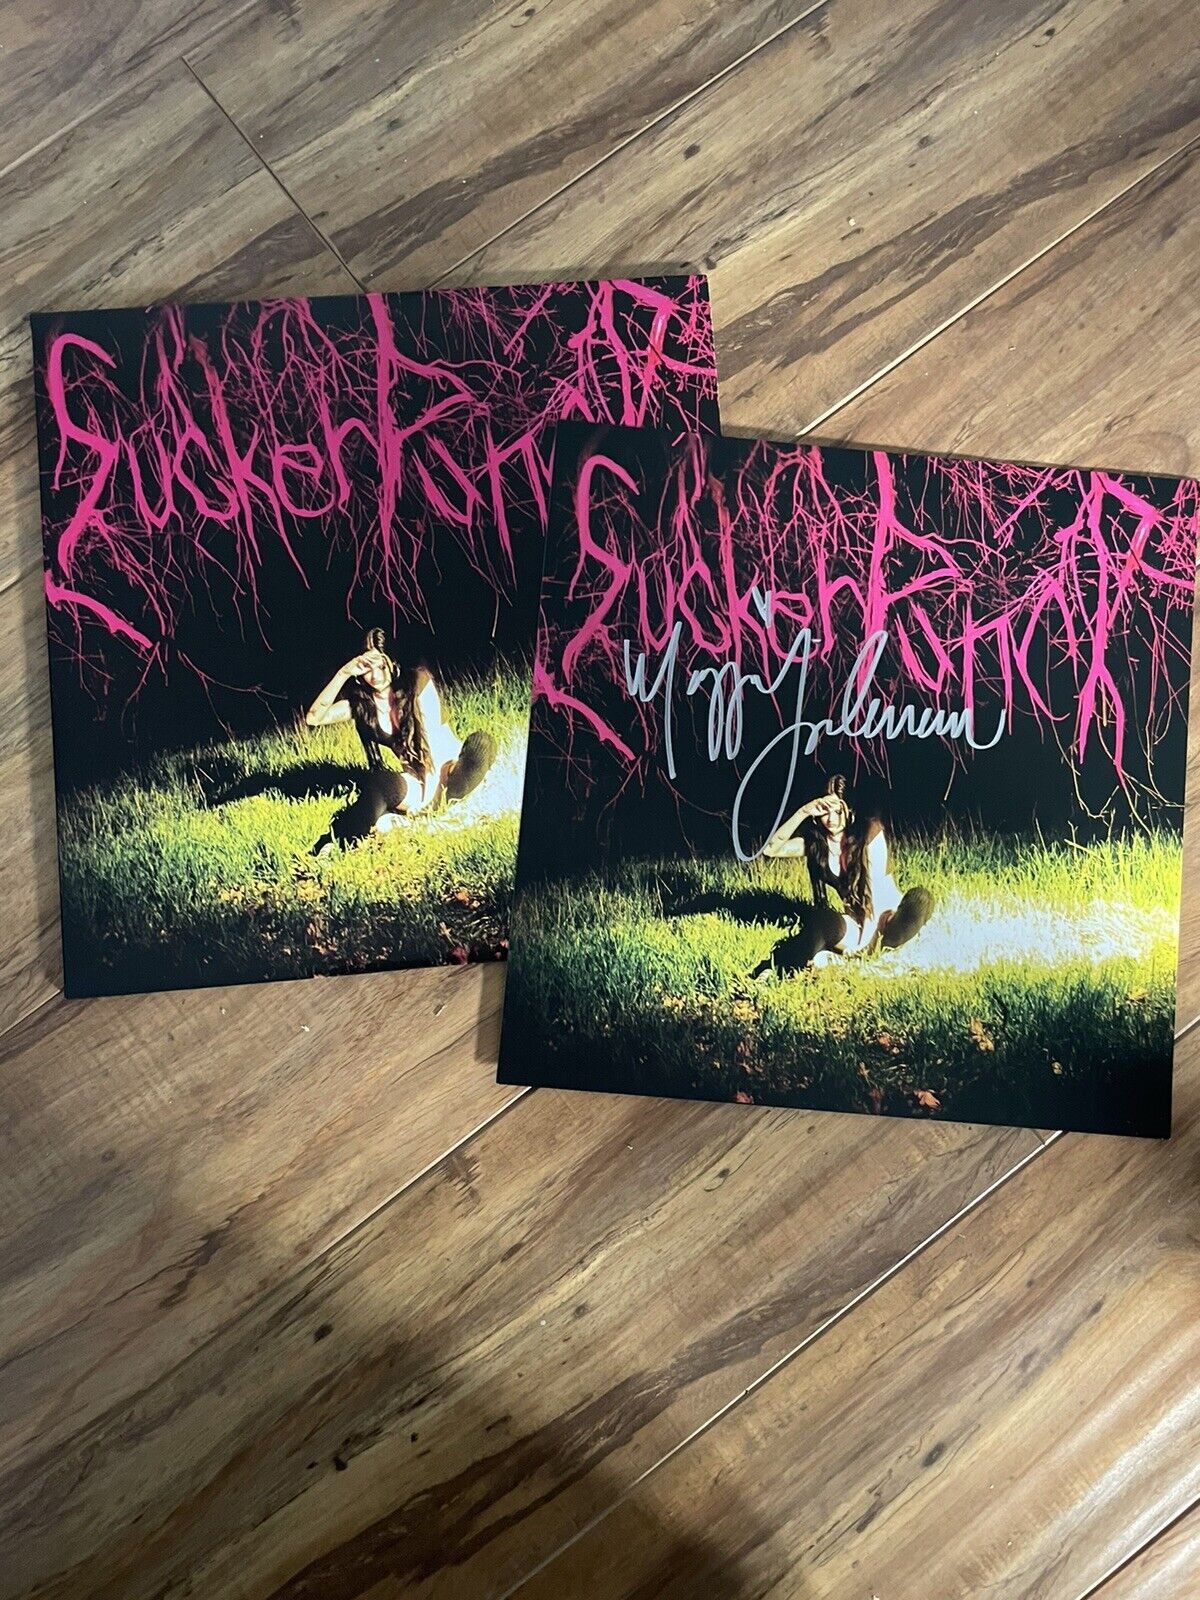 Maggie Lindemann SIGNED Suckerpunch GREEN Vinyl  Autographed Ltd. Edition